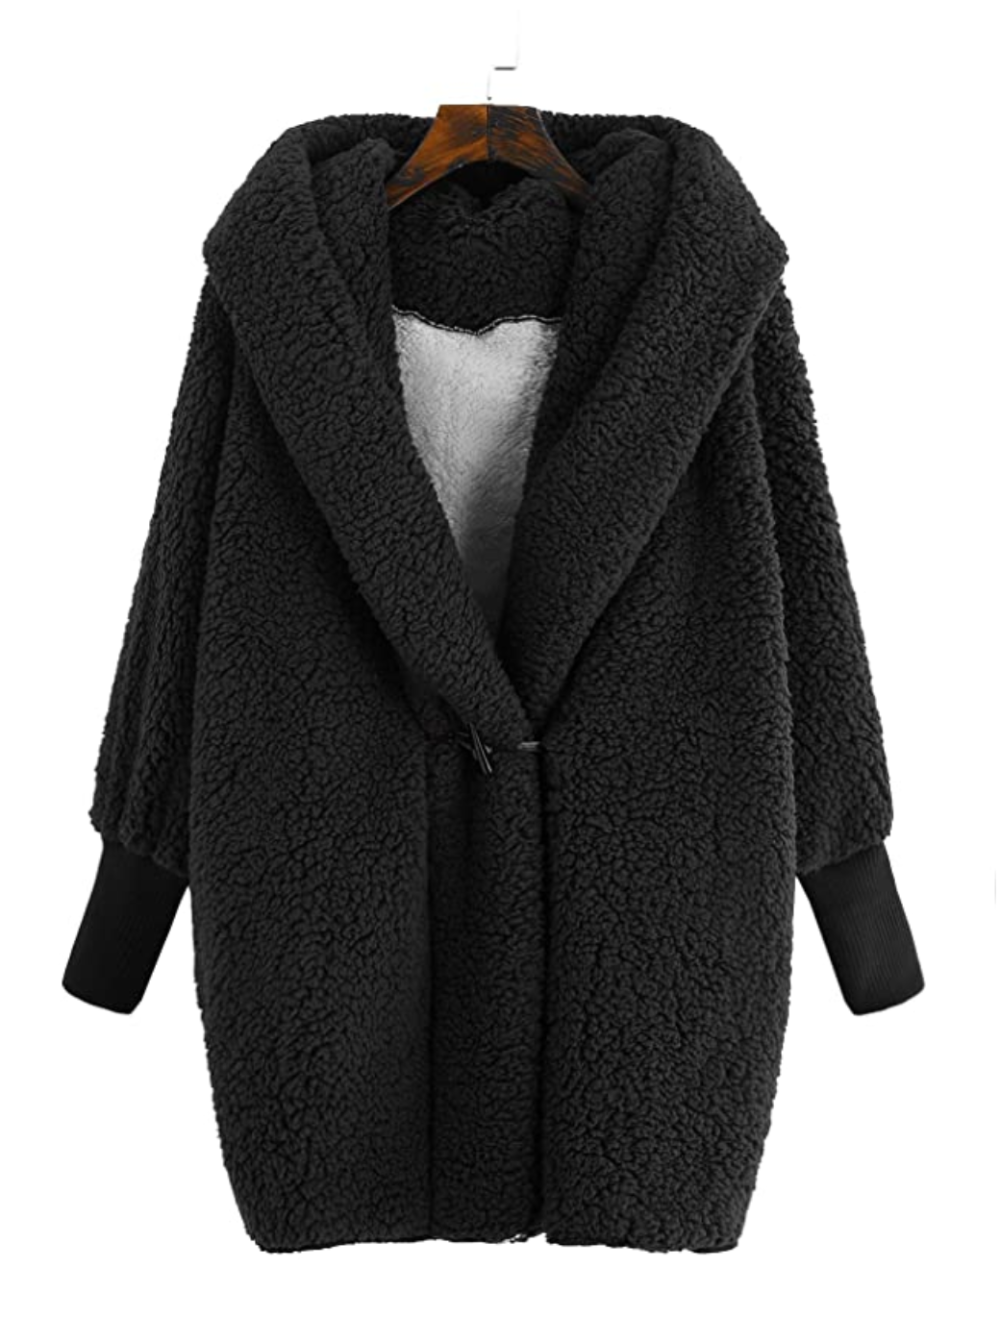 SweatyRocks Women's Hooded Dolman Sleeve Faux Fur Cardigan Coat